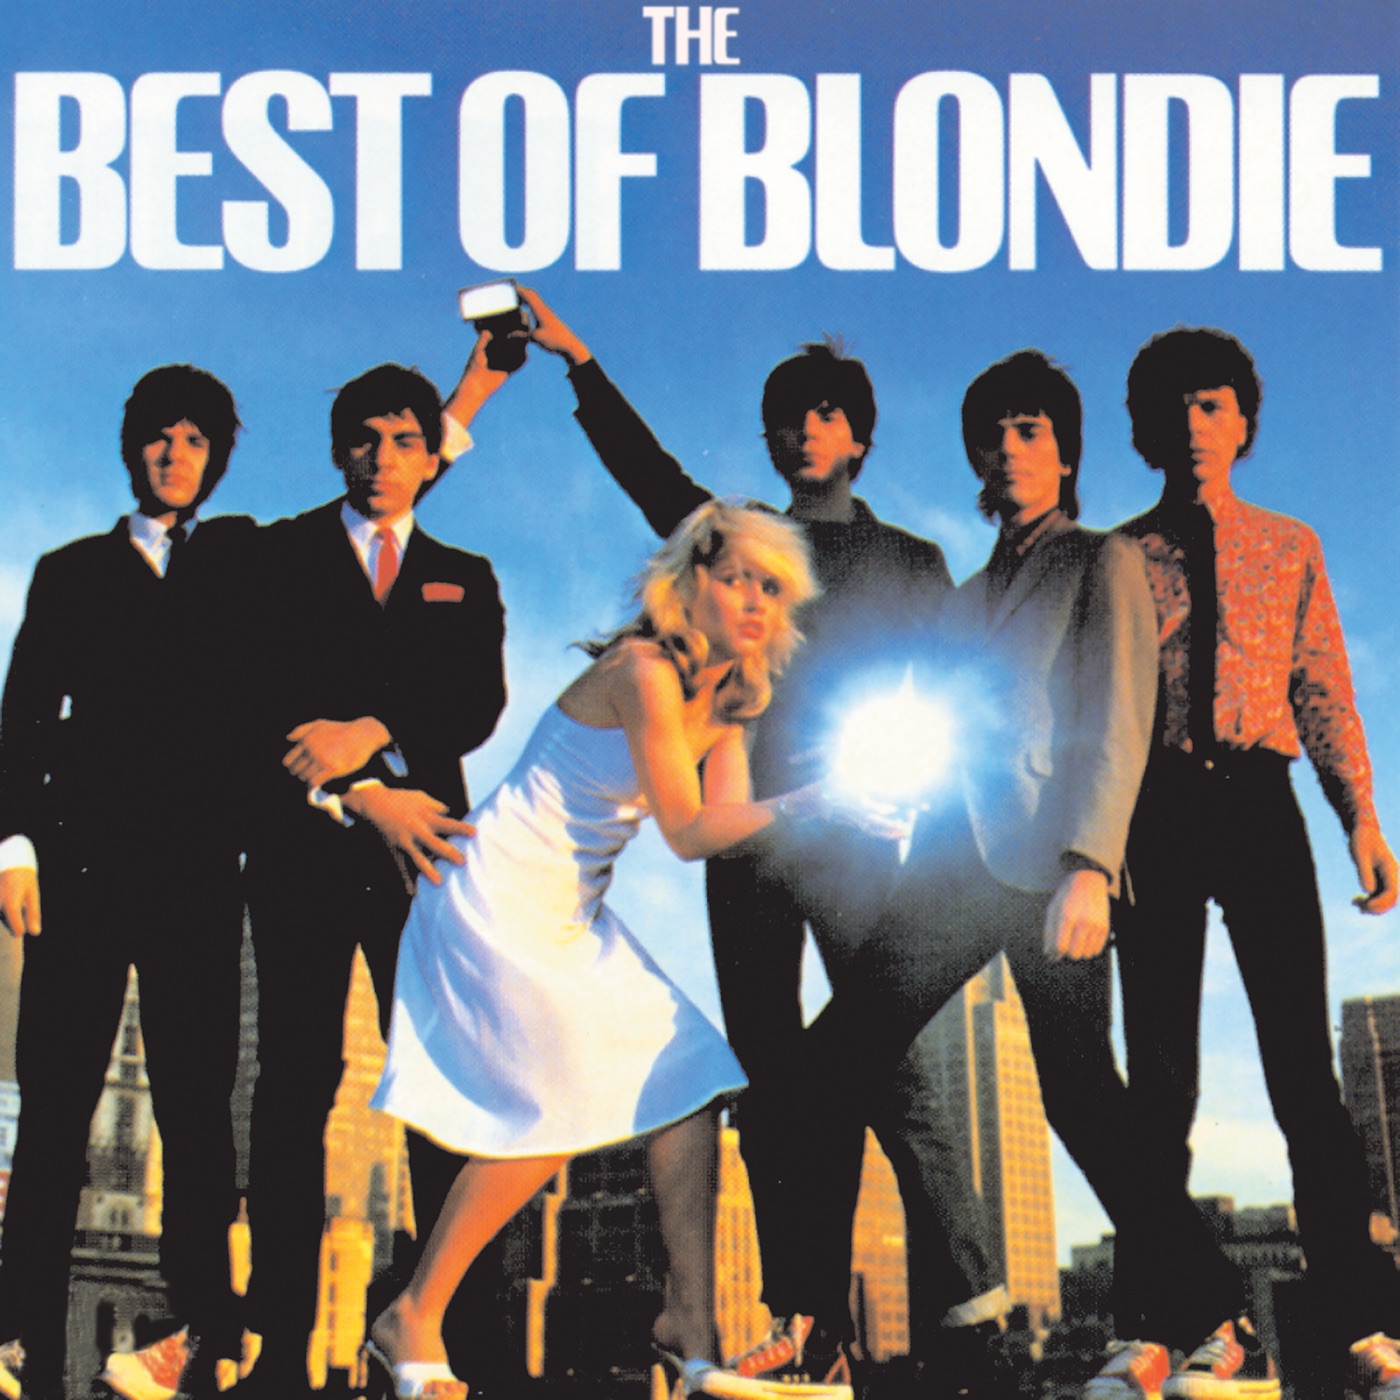 Best Of Blondie by Blondie